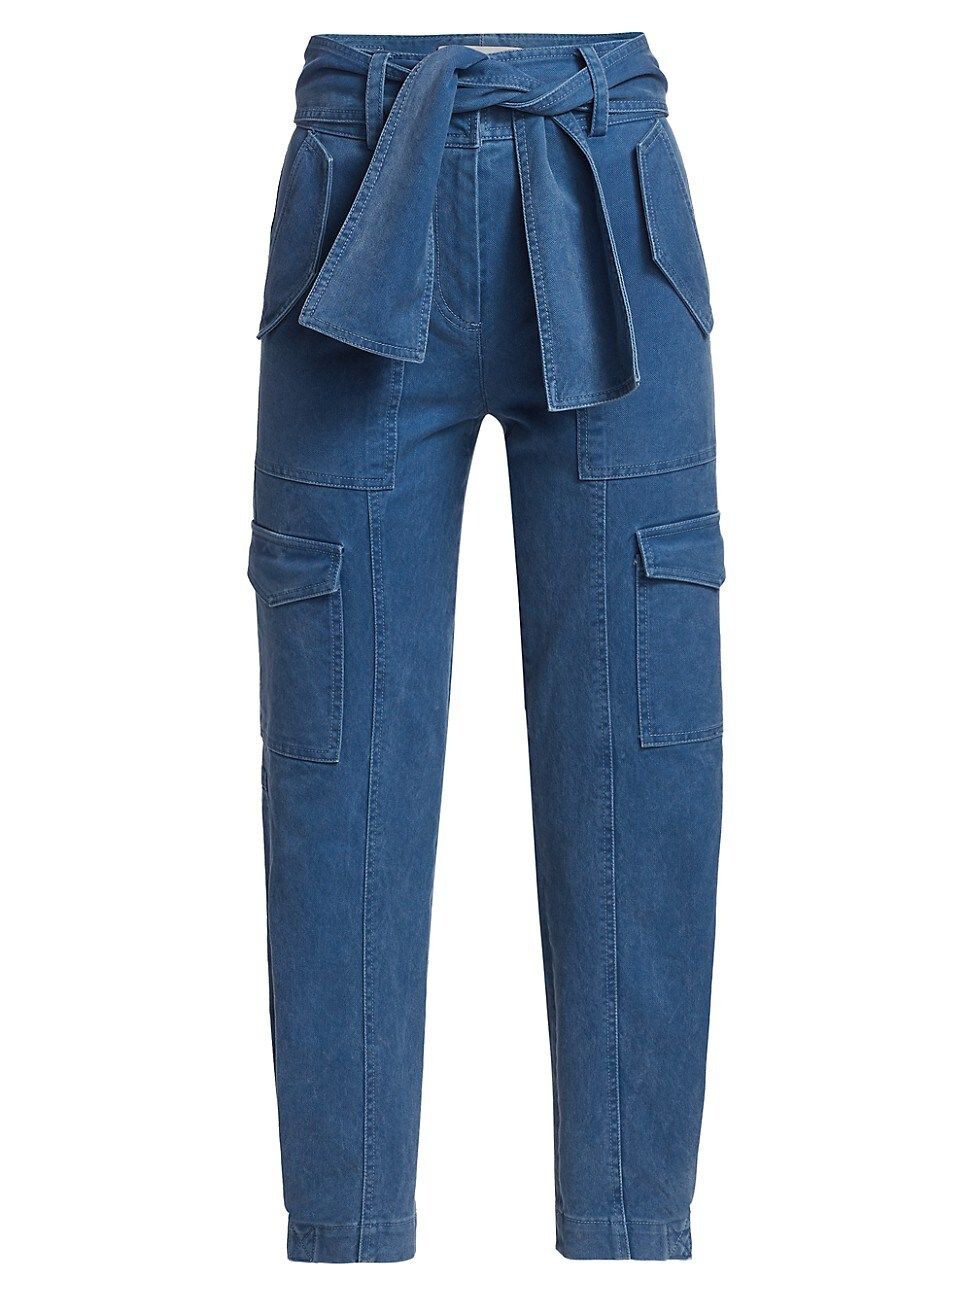 Derek Lam 10 Crosby Women's Elian Belted Cargo Trousers - Blue - Size 8 | Saks Fifth Avenue